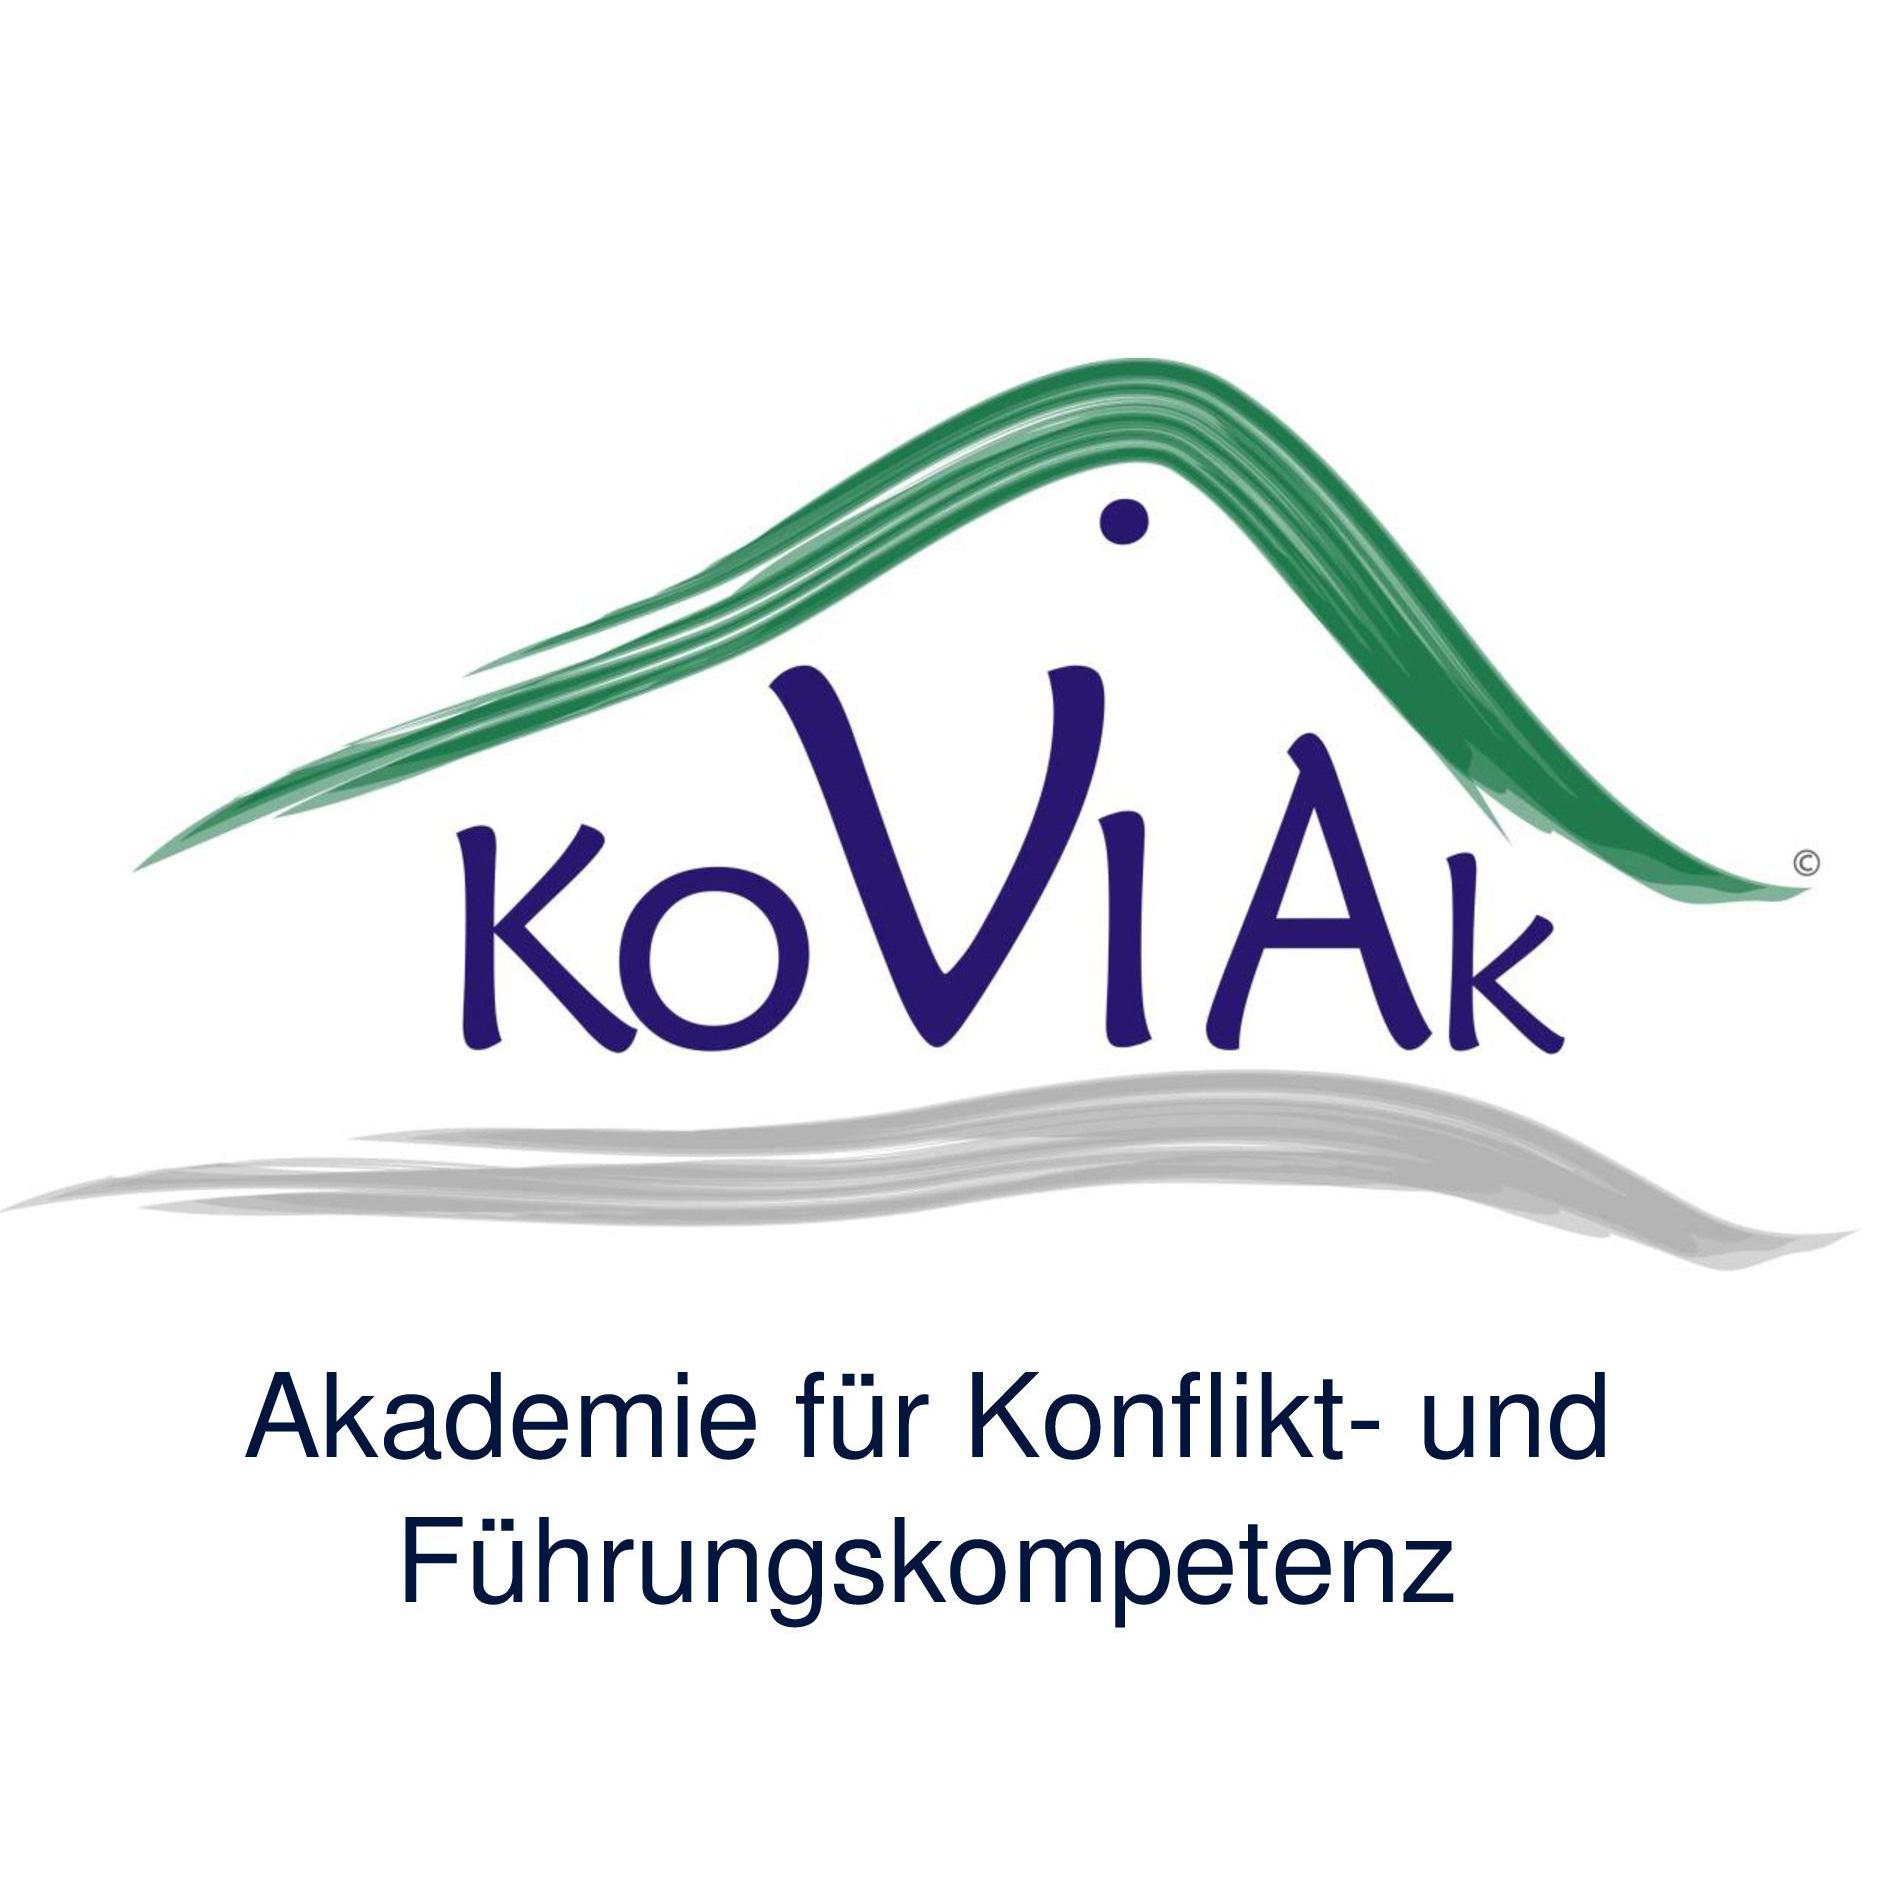 Logo KoViAk Akademie